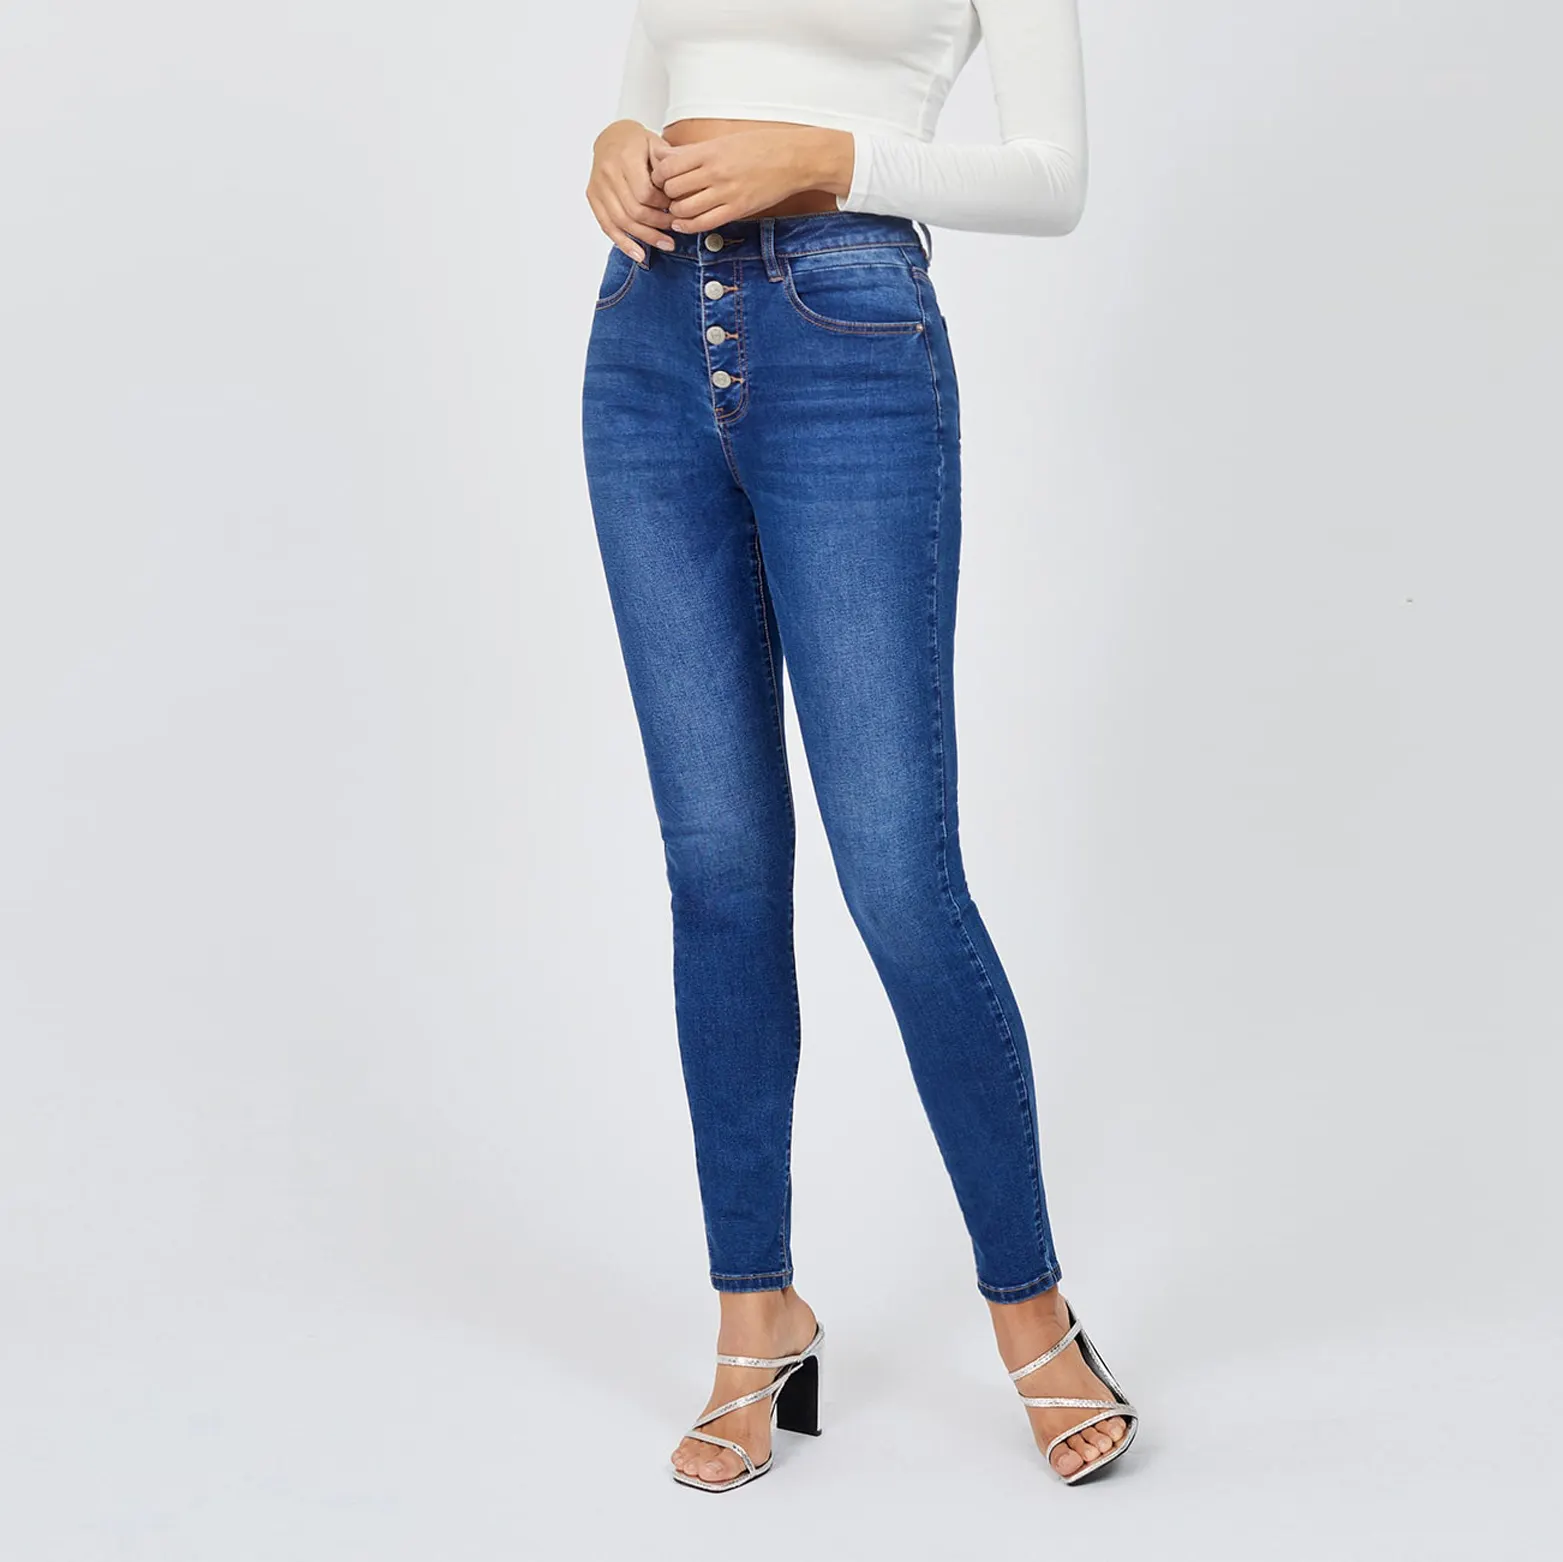 Benutzer definierte Label Button Skinny sexy elastische gewaschene Jeans mit hoher Taille Jeans Frauen